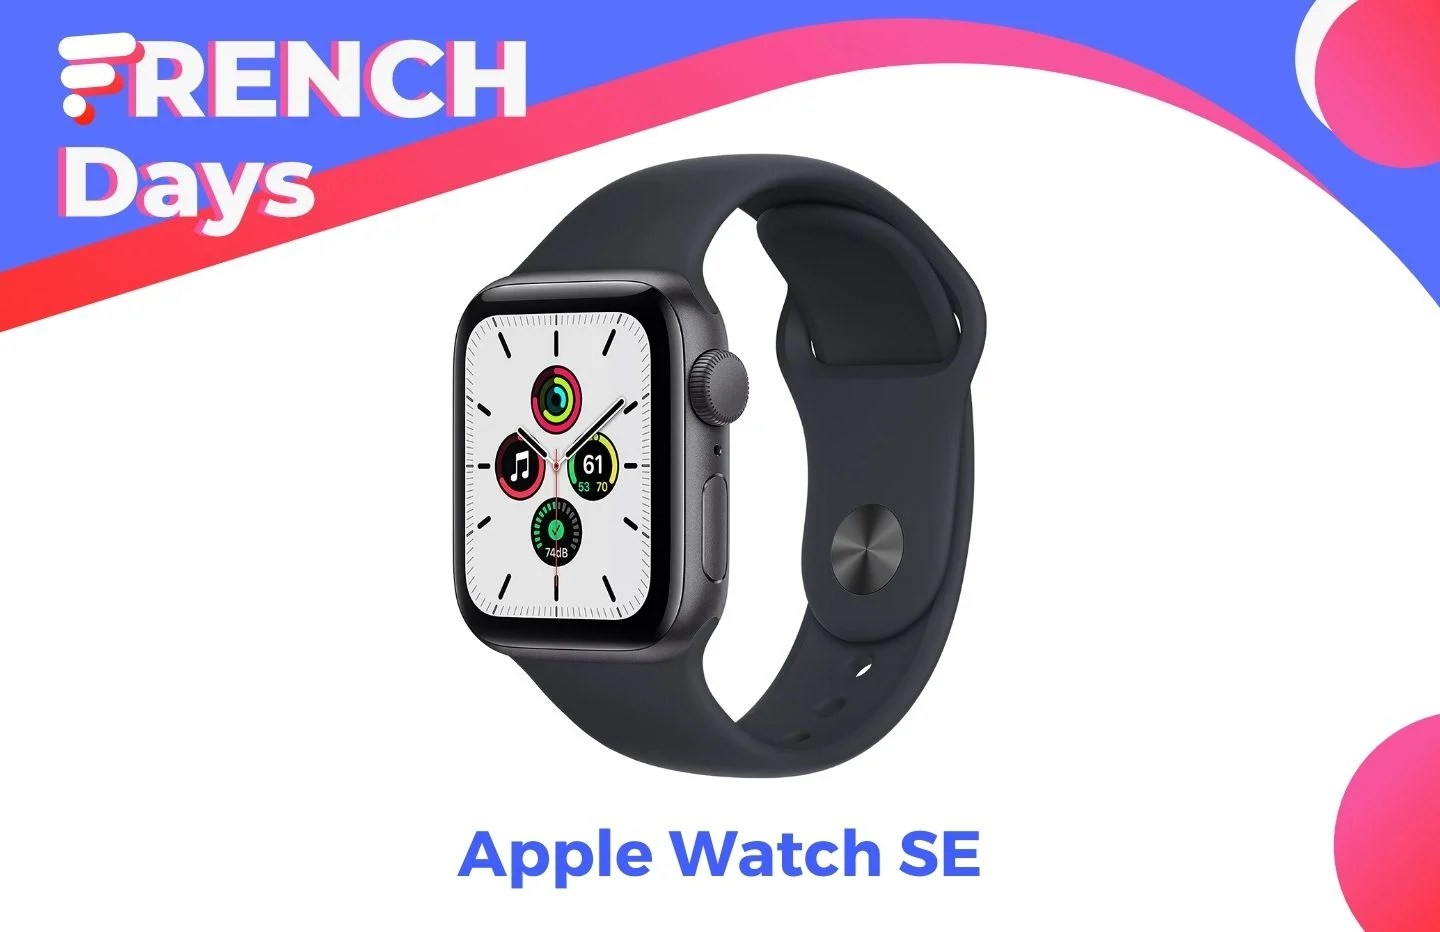 L’Apple Watch SE baisse son prix spécialement pour les French Days